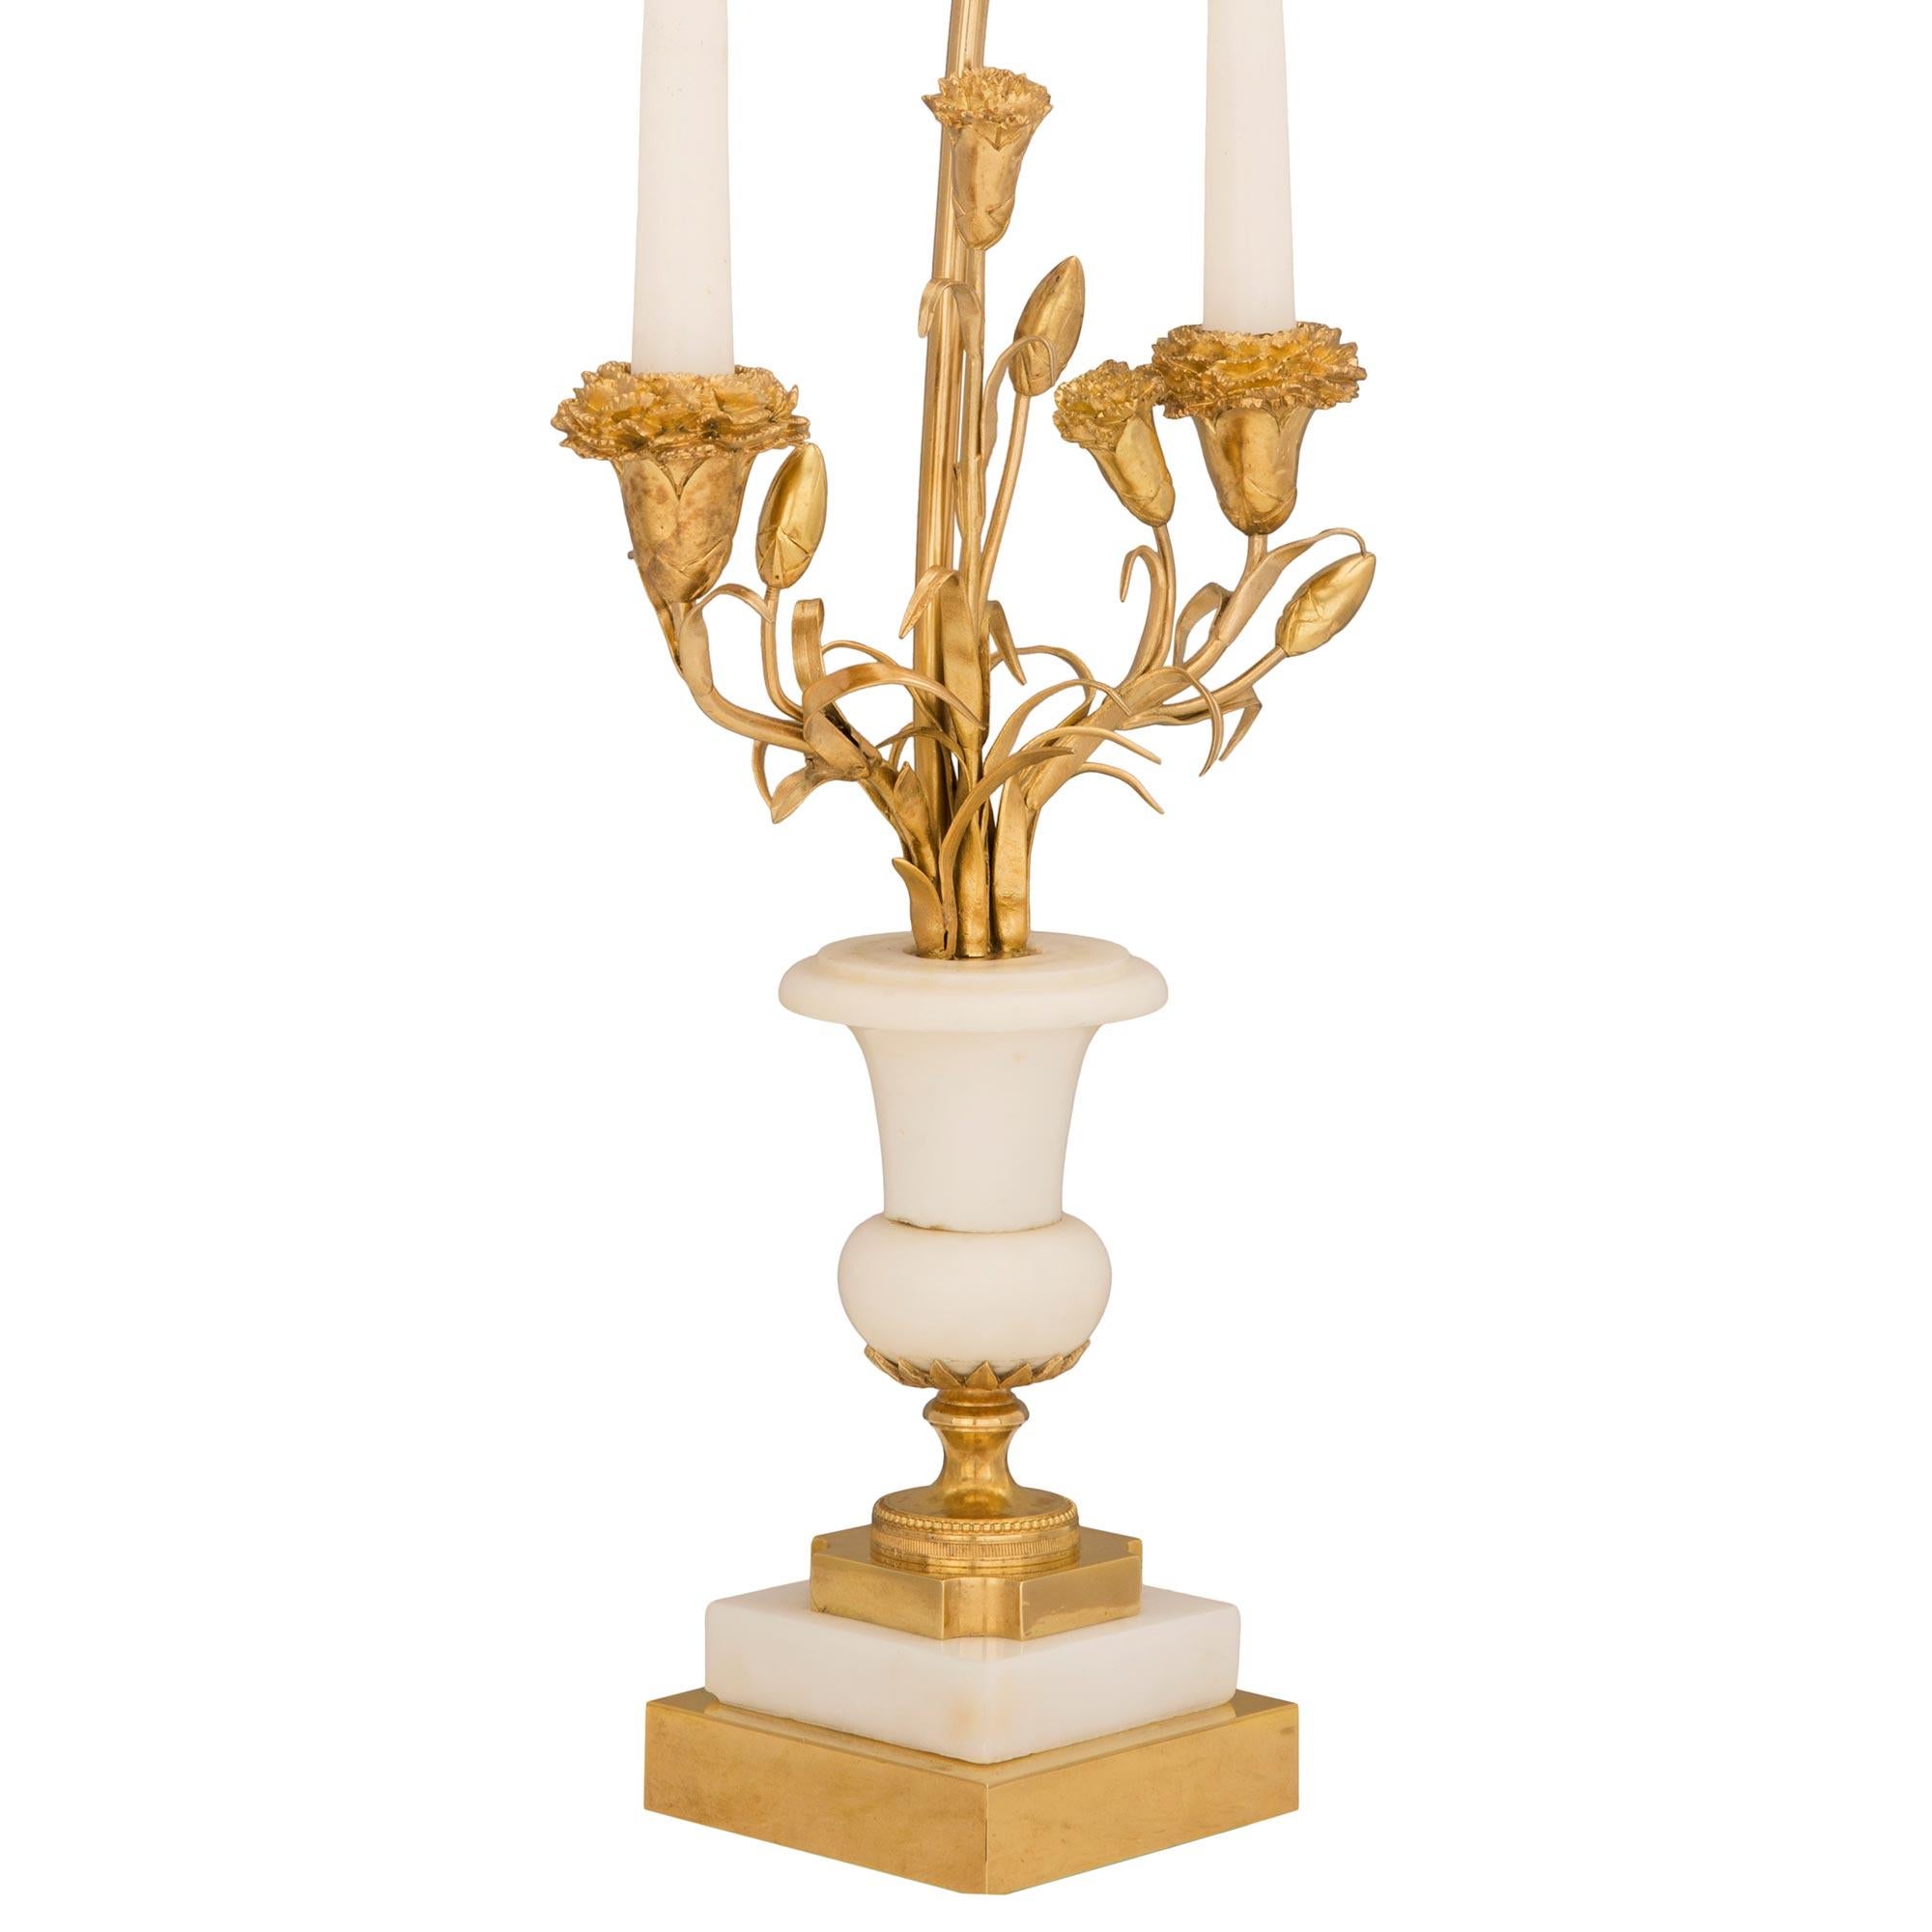 Une paire exquise de lampes candélabres françaises de style Louis XVI de la fin du 19ème siècle en bronze doré et marbre blanc de Carrare. Chaque lampe est surélevée par une base carrée en bronze doré avec de fins pieds en forme de chignon sous le